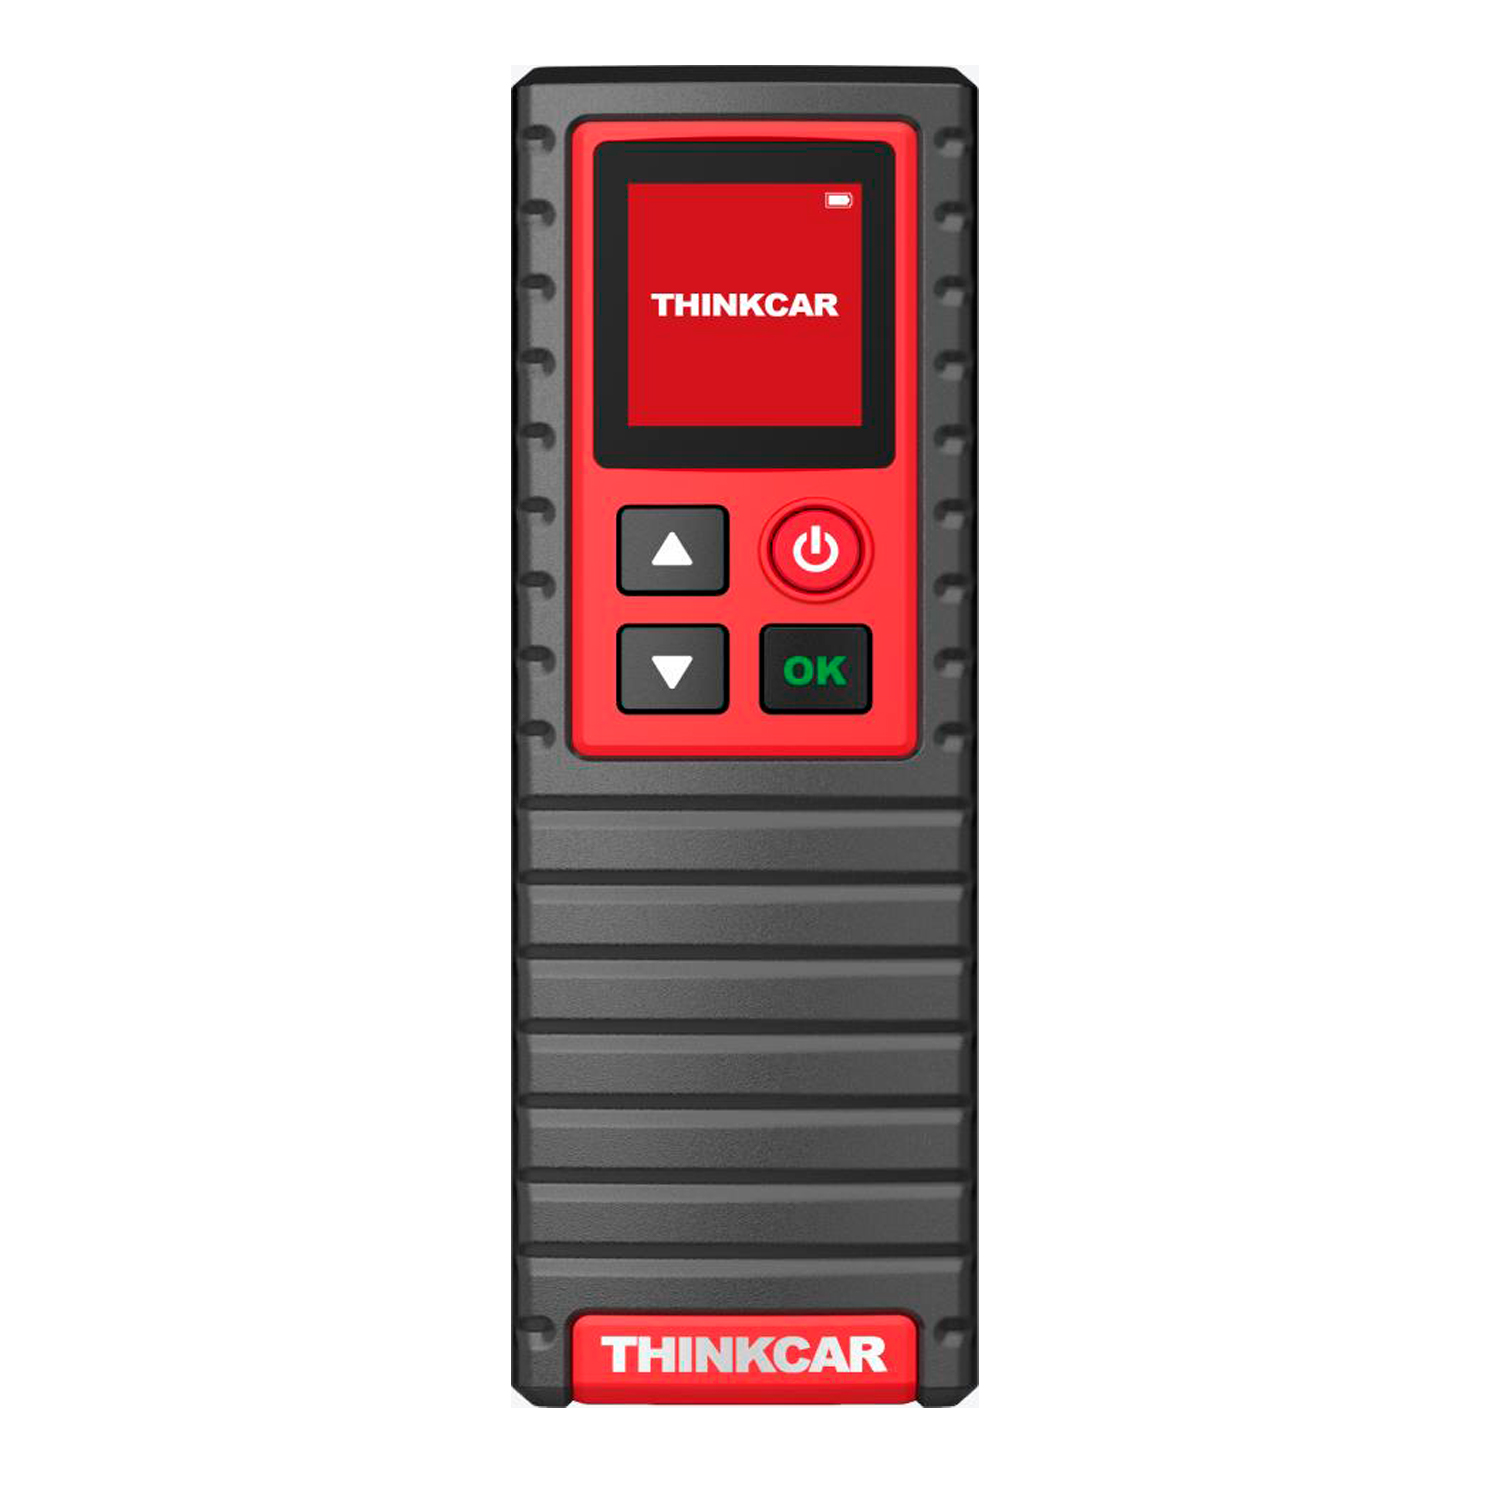 Сканер датчиков TPMS Thinkcar T-wand 200